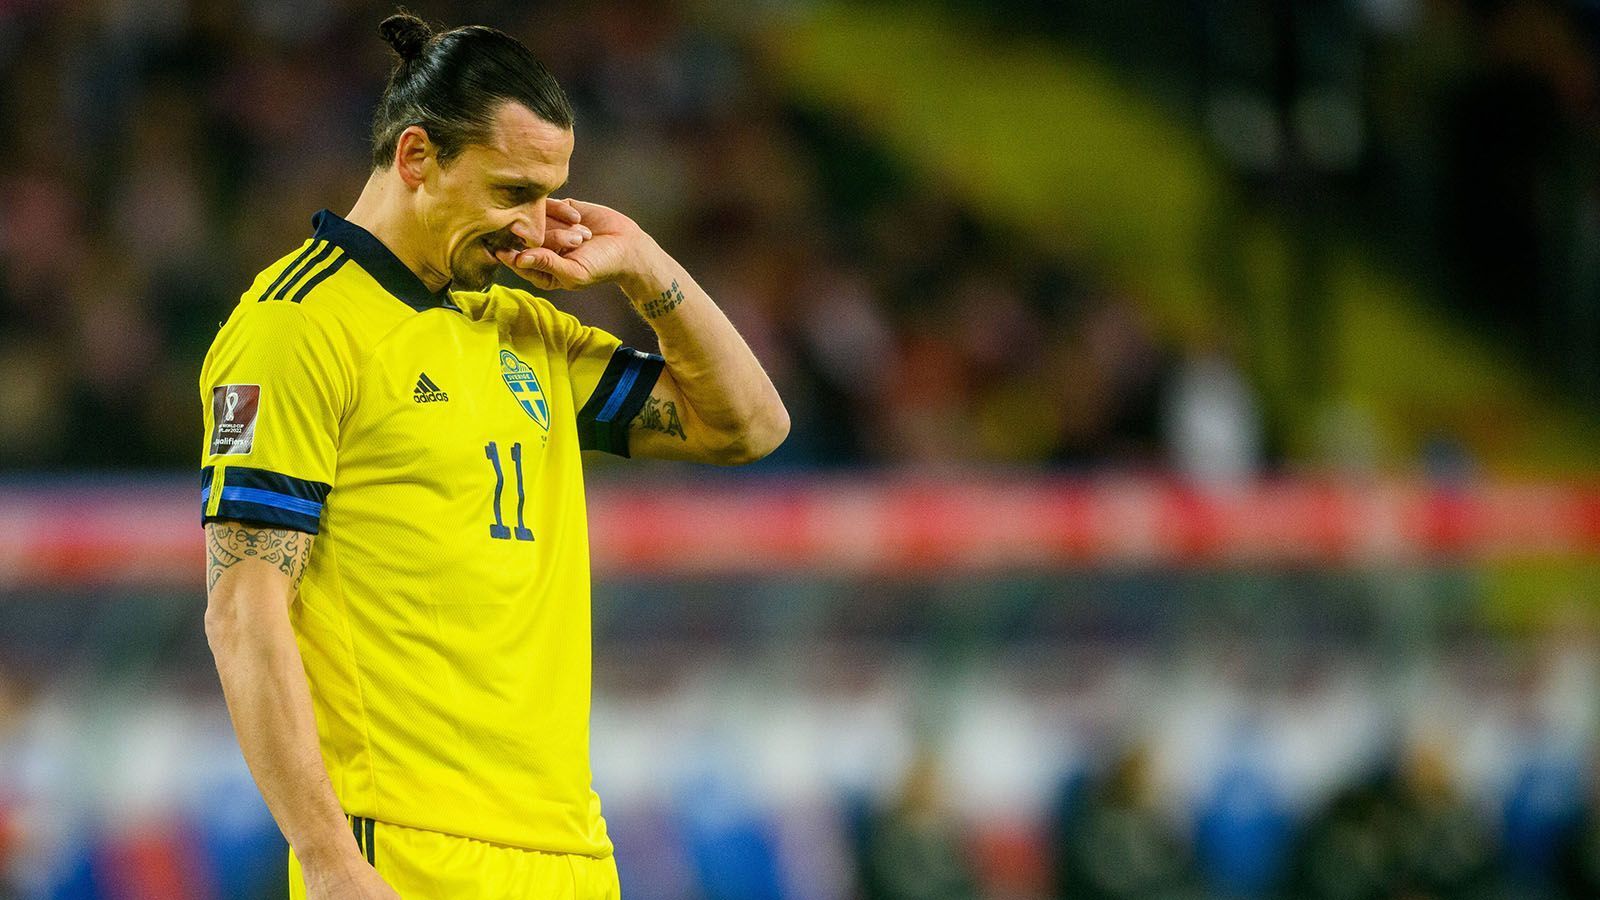 
                <strong>Zlatan Ibrahimovic (Schweden)</strong><br>
                Auch 2022 muss die Weltmeisterschaft ohne Zlatan Ibrahimovic auskommen. In den Playoffs verlor die schwedische Nationalmannschaft mit 0:2 gegen Polen. Das letzte Mal stand "Ibrakadabra" 2006 bei einer WM auf dem Platz. Damals schmiss Deutschland die Schweden im Achtelfinale aus dem Turnier. Im Oktober wird Ibrahimovic 41. 2026 wäre er als 45. Unrealistisch, dass er dann immer noch das Trikot überzieht. Andererseits... wenn es jemanden zuzutrauen ist dann Zlatan Ibrahimovic.
              